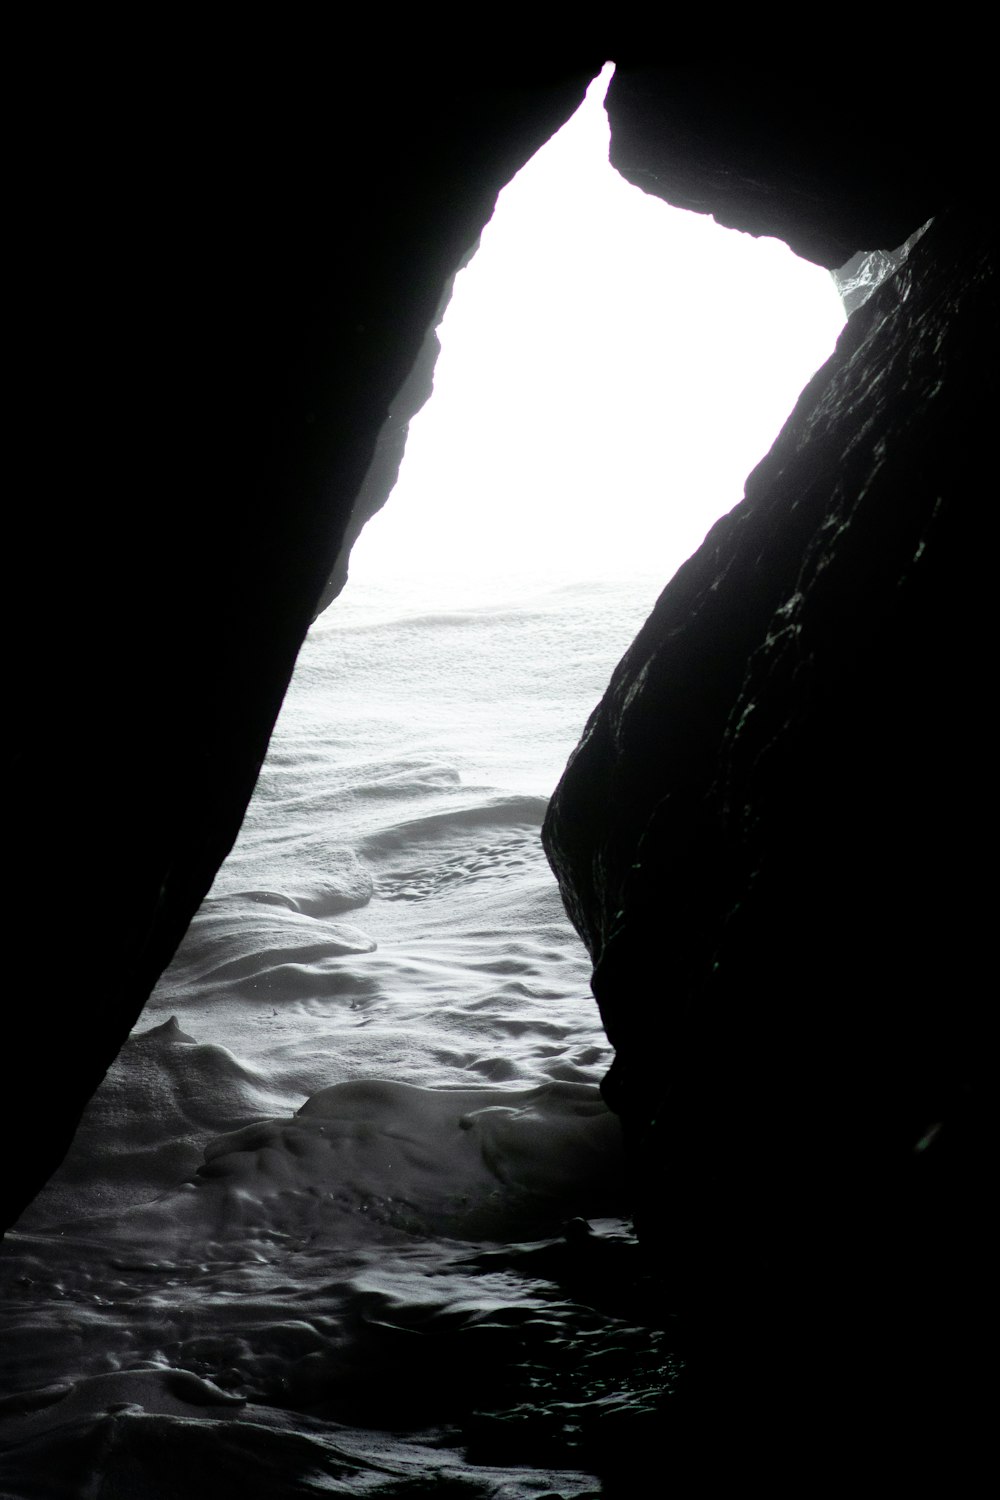 foto in scala di grigi della grotta vicino allo specchio d'acqua